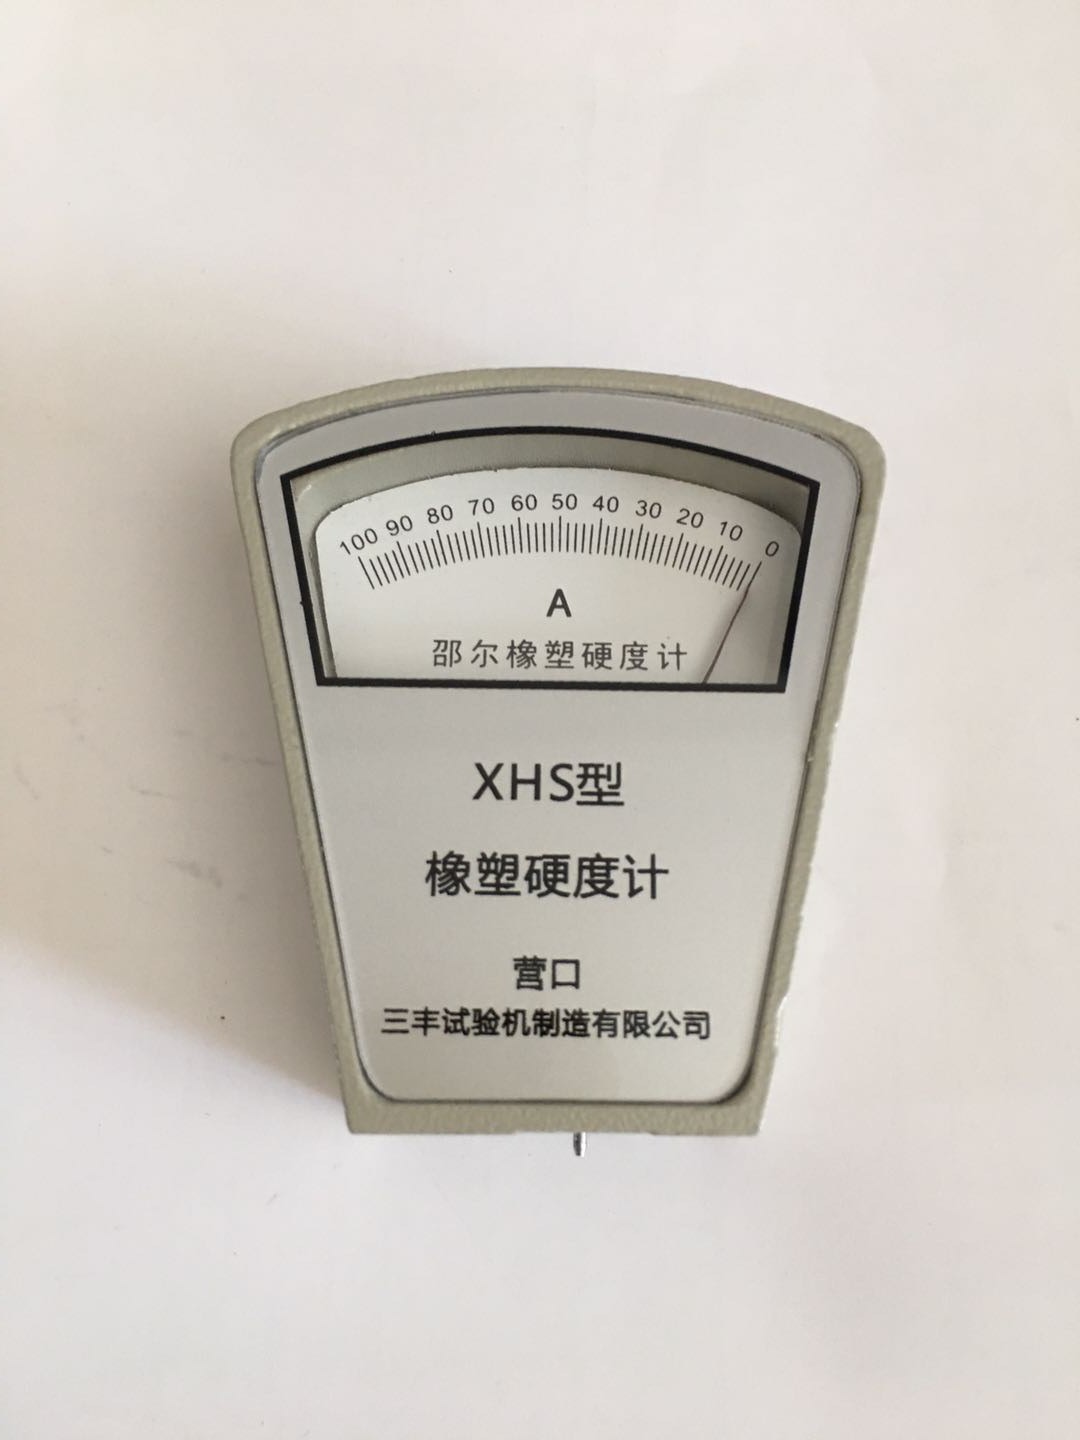 XHS-A邵尔橡胶硬度计 邵氏橡胶硬度计 橡塑硬度计 邵尔硬度计厂家